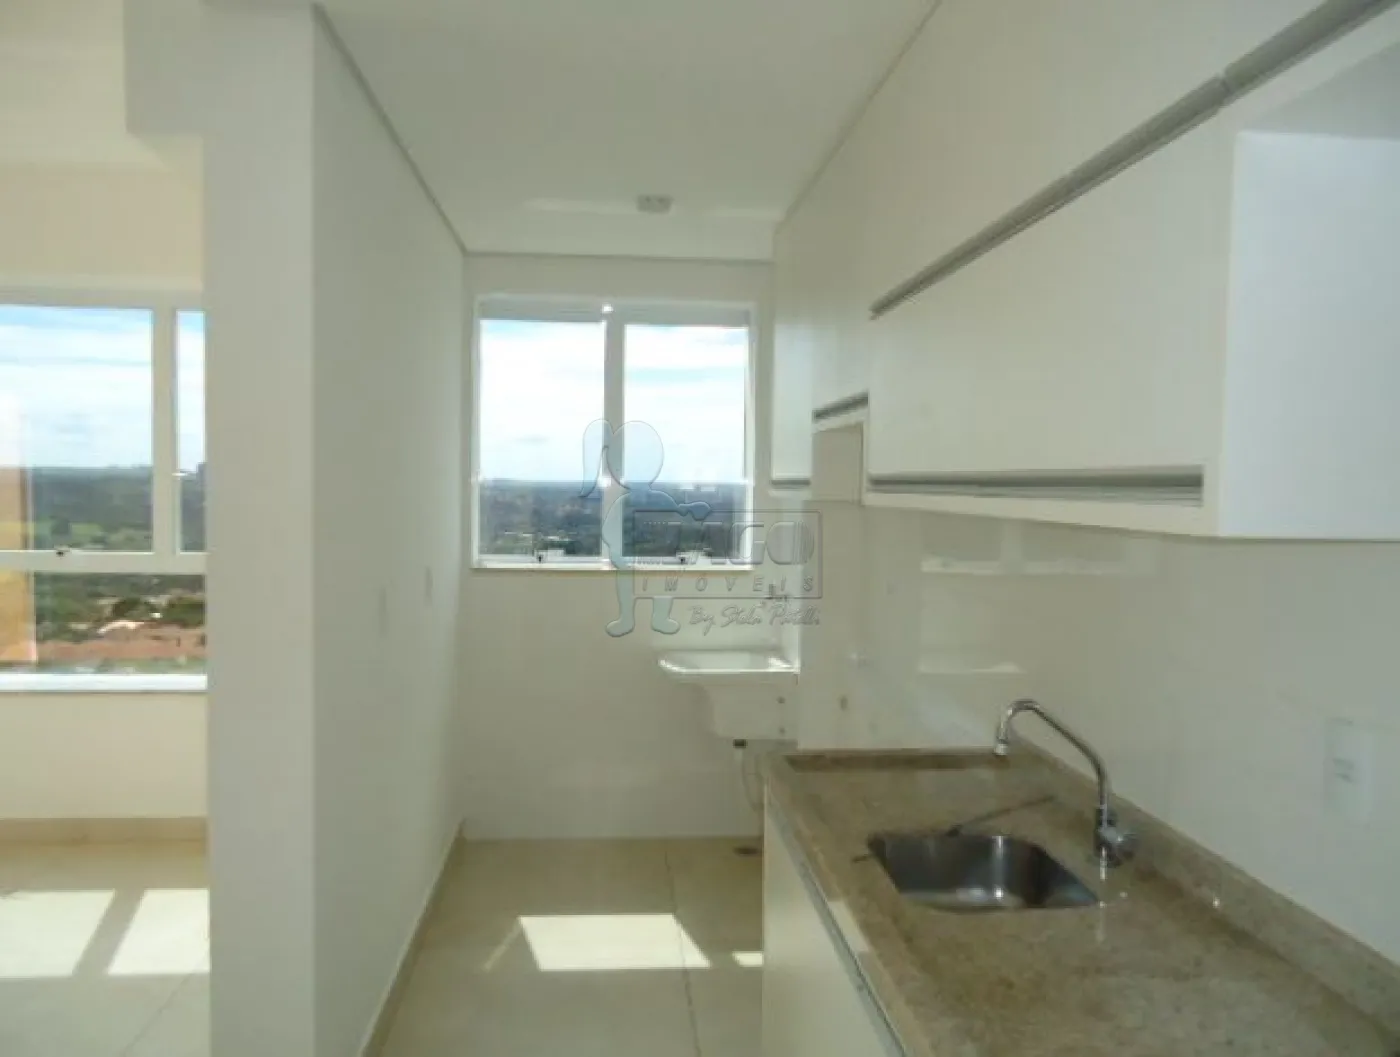 Alugar Apartamentos / Cobertura em Ribeirão Preto R$ 4.000,00 - Foto 2